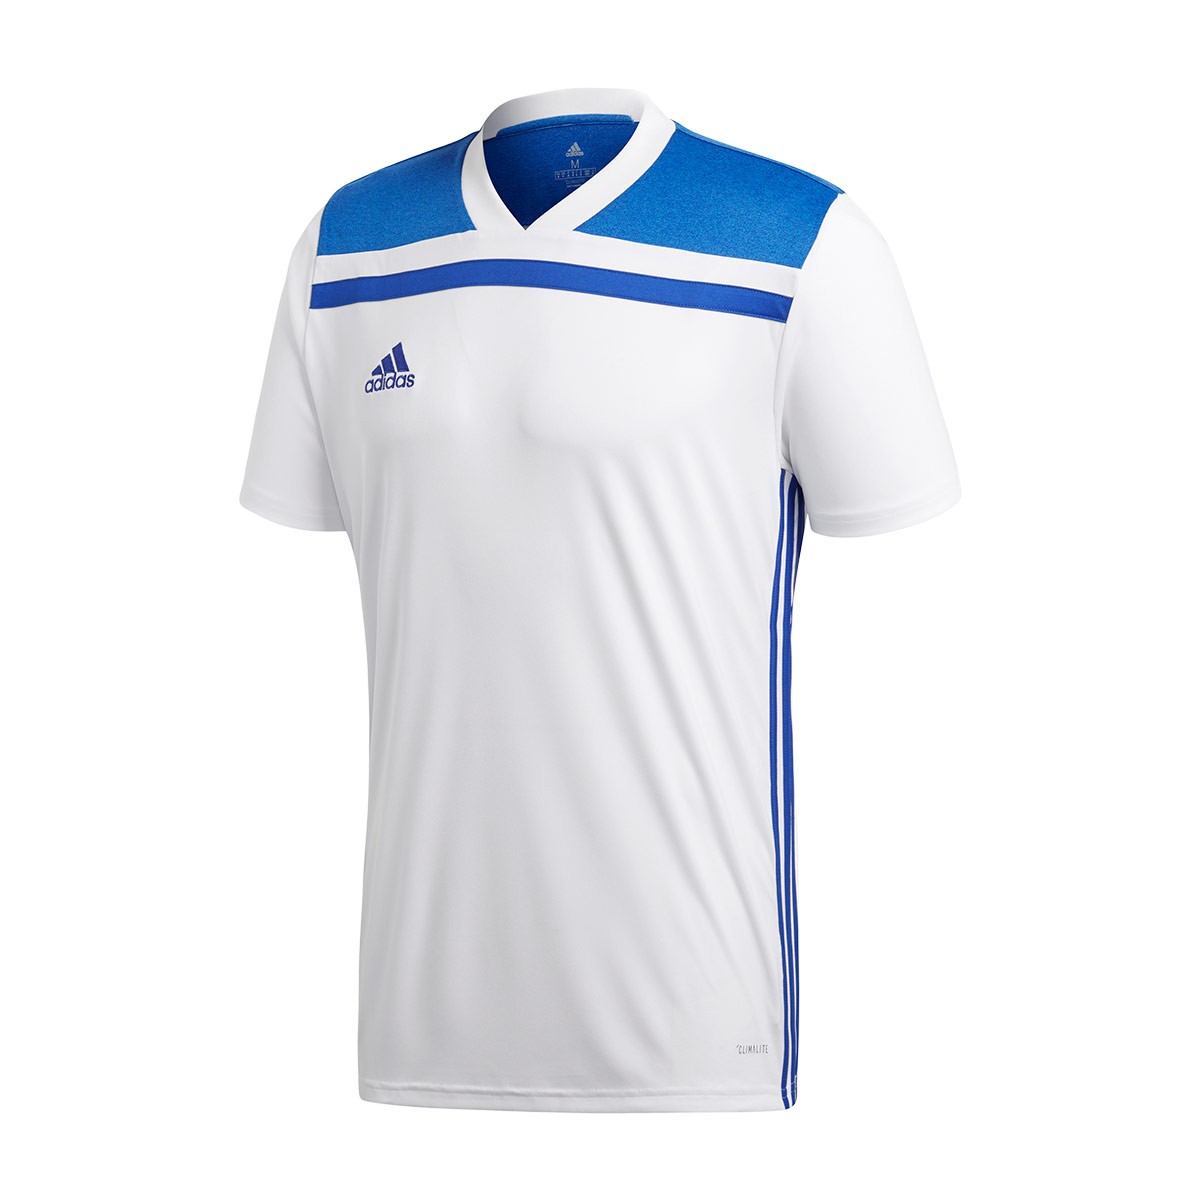 Camiseta adidas Regista 18 m/c White-Bold blue - Tienda de fútbol 